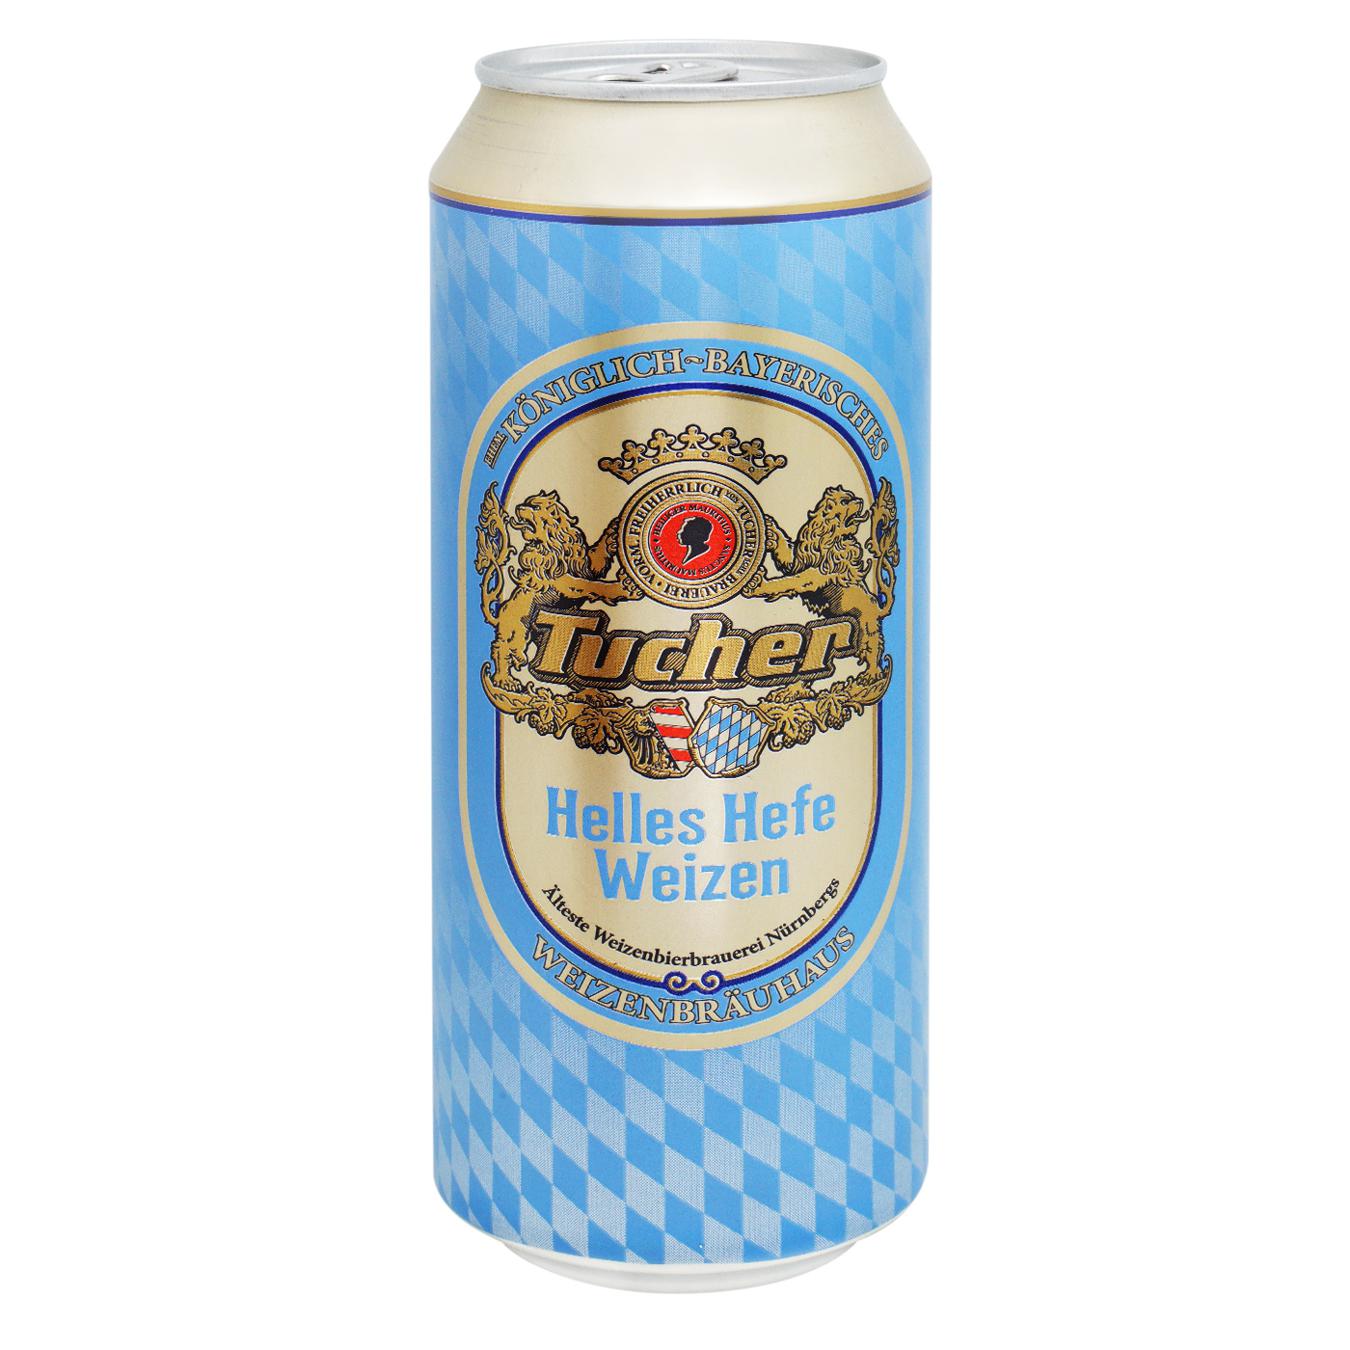 Light beer Tucher Helles Hefe Weizen 5.2% 0.5 l iron can